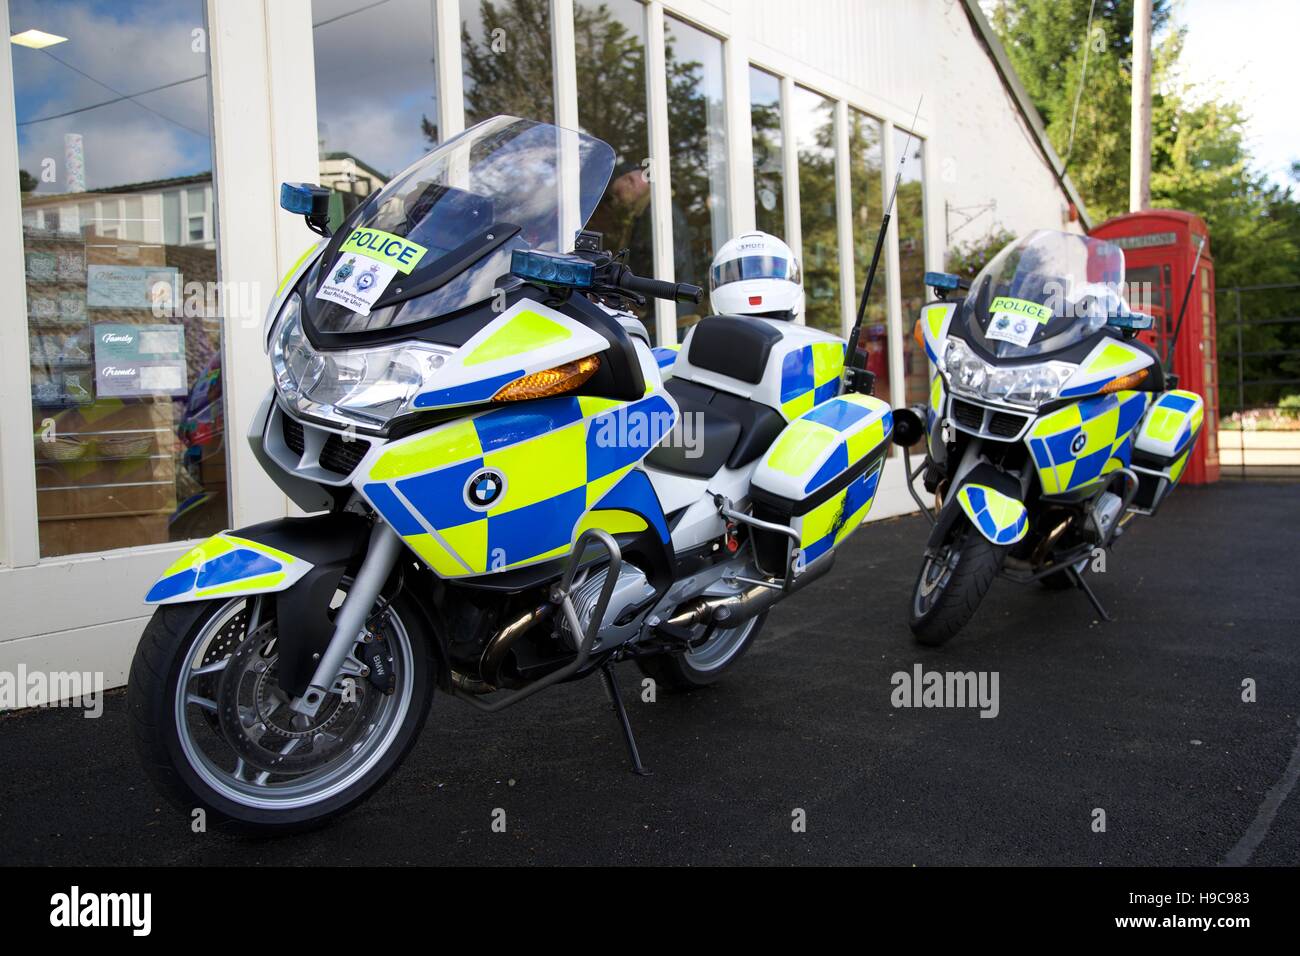 Two Police motorbikes Stock Photo